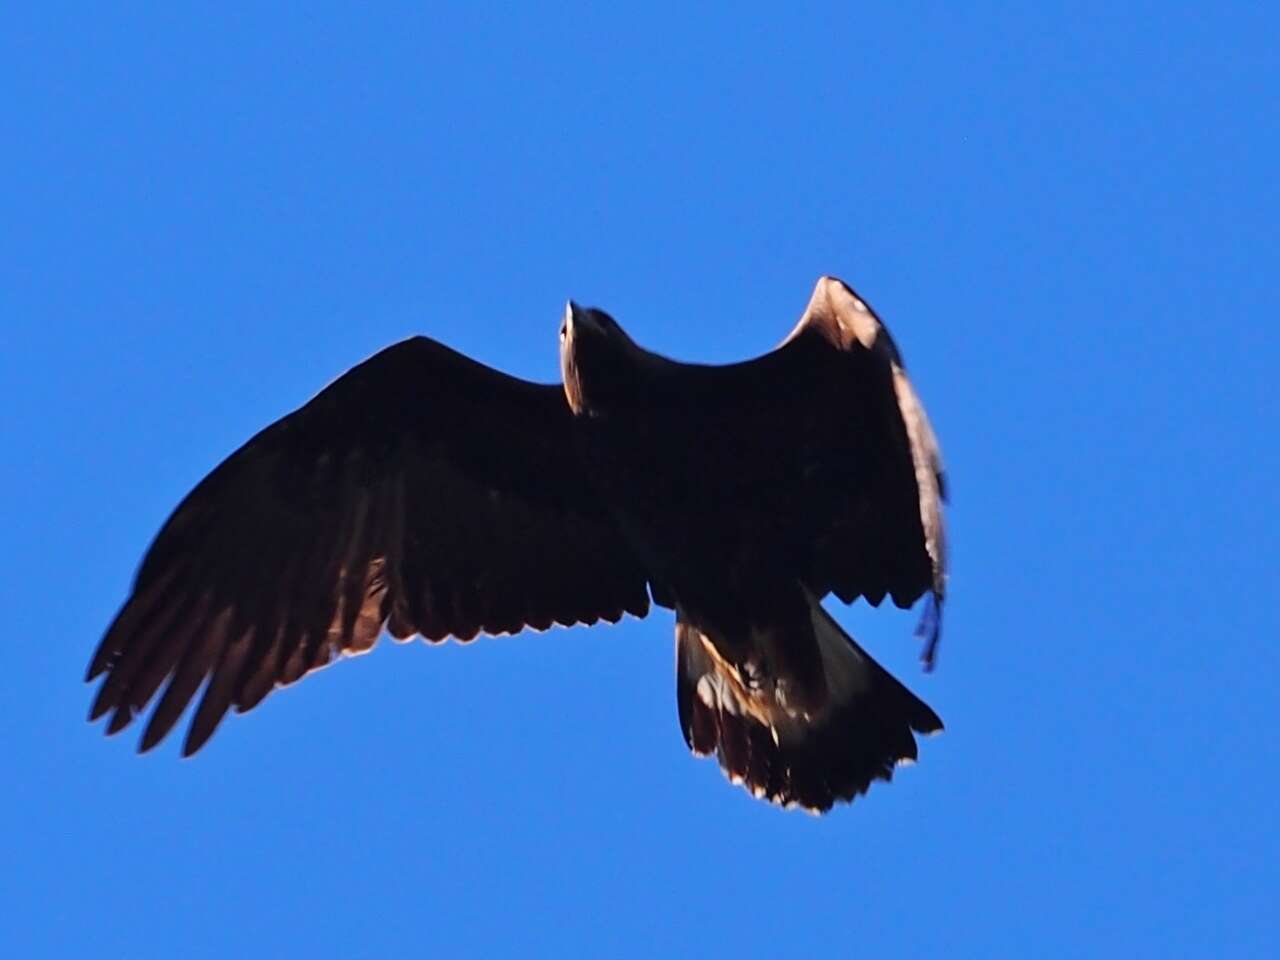 Image of Golden eagle